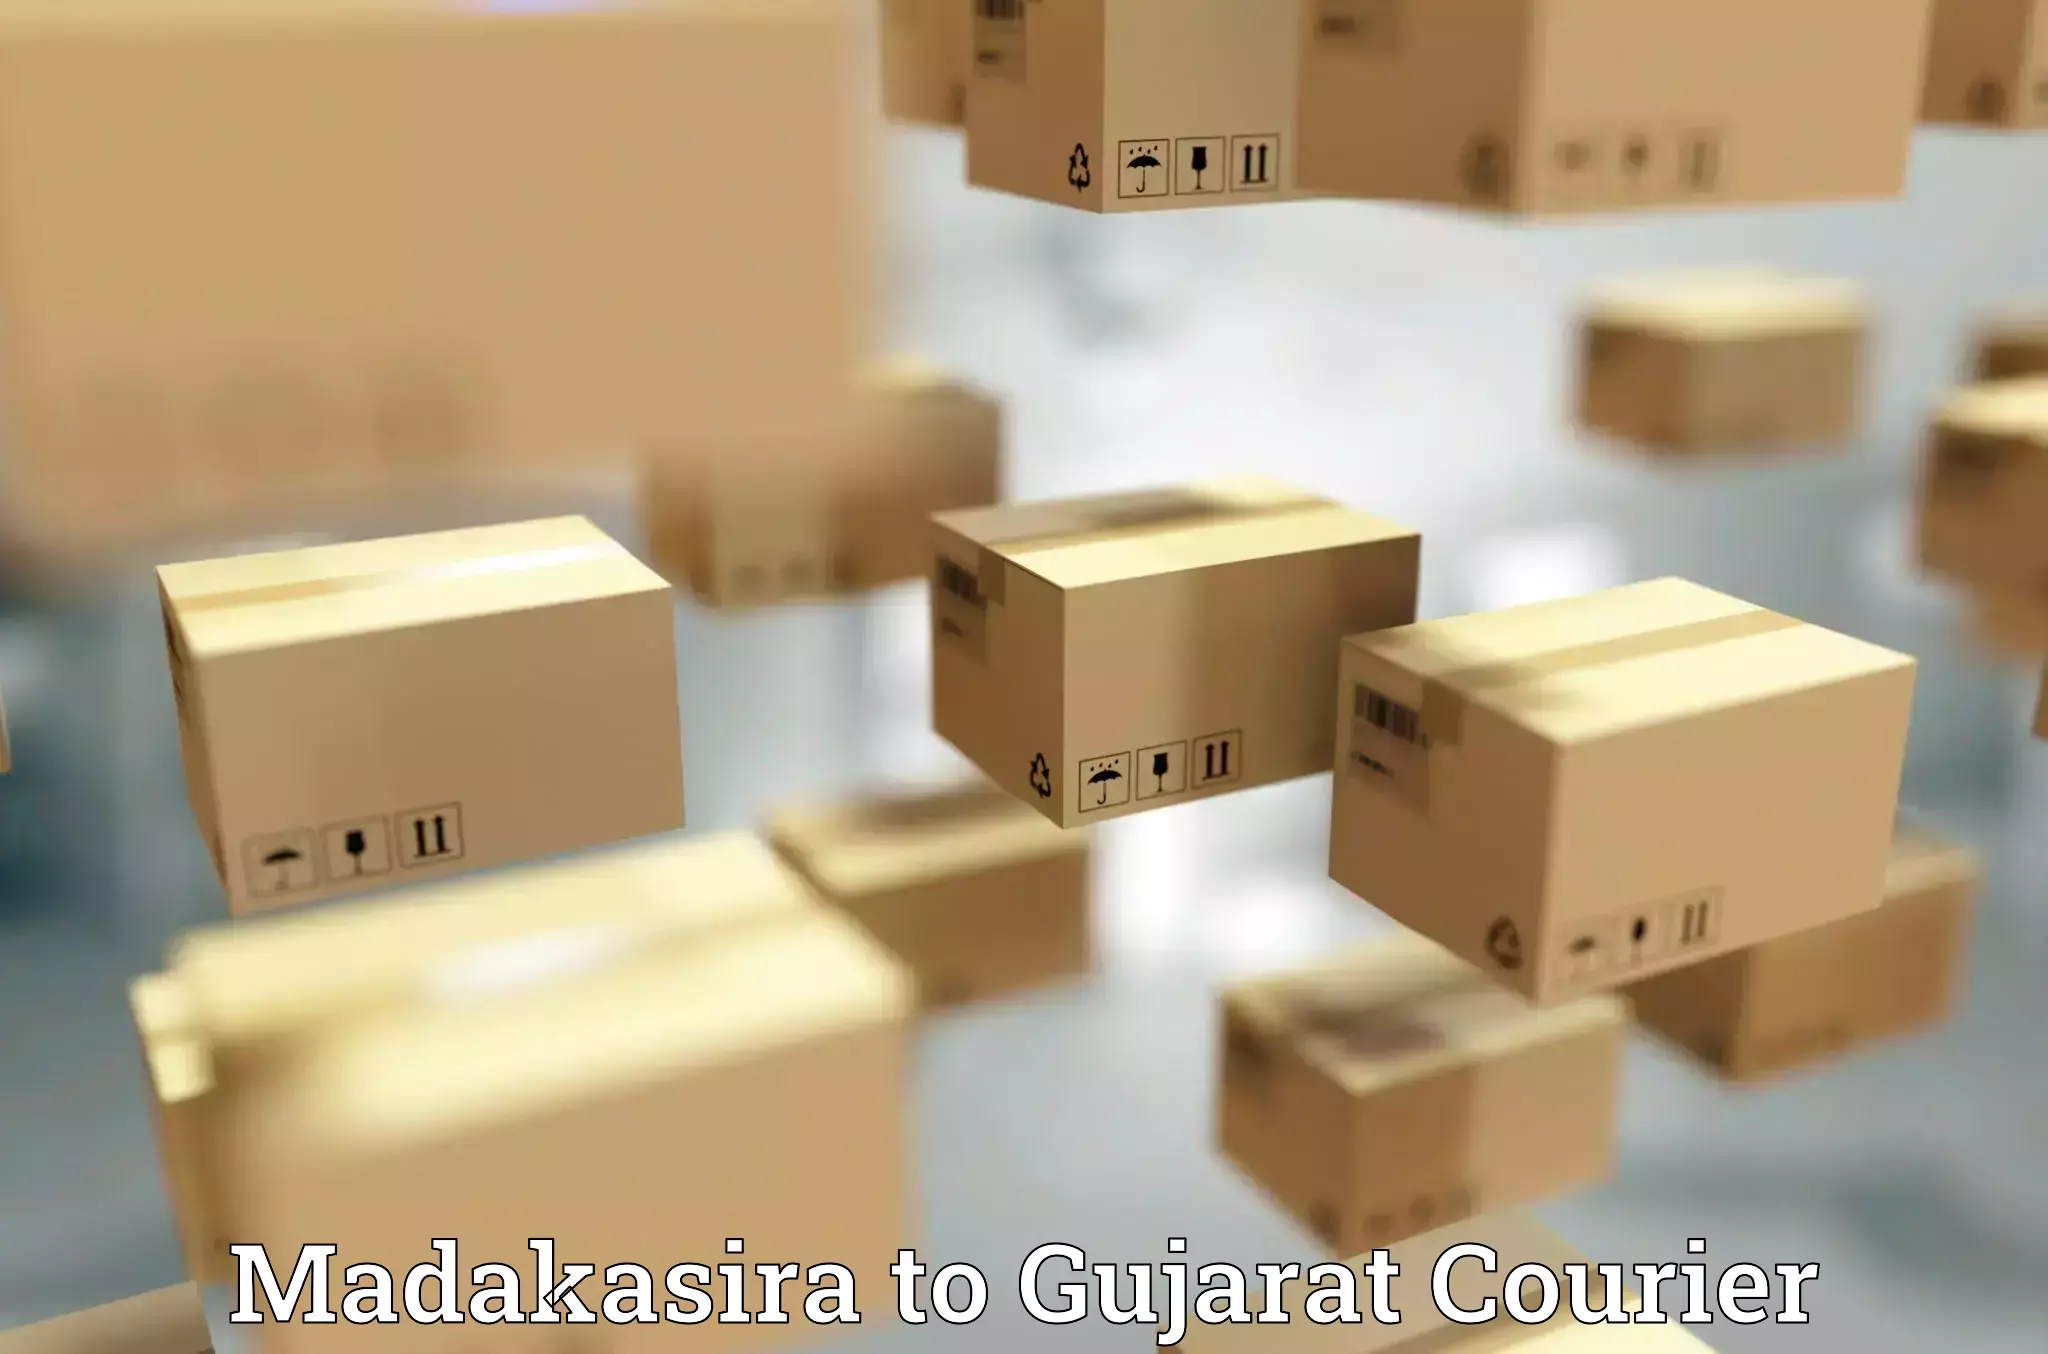 Global courier networks Madakasira to Bhuj